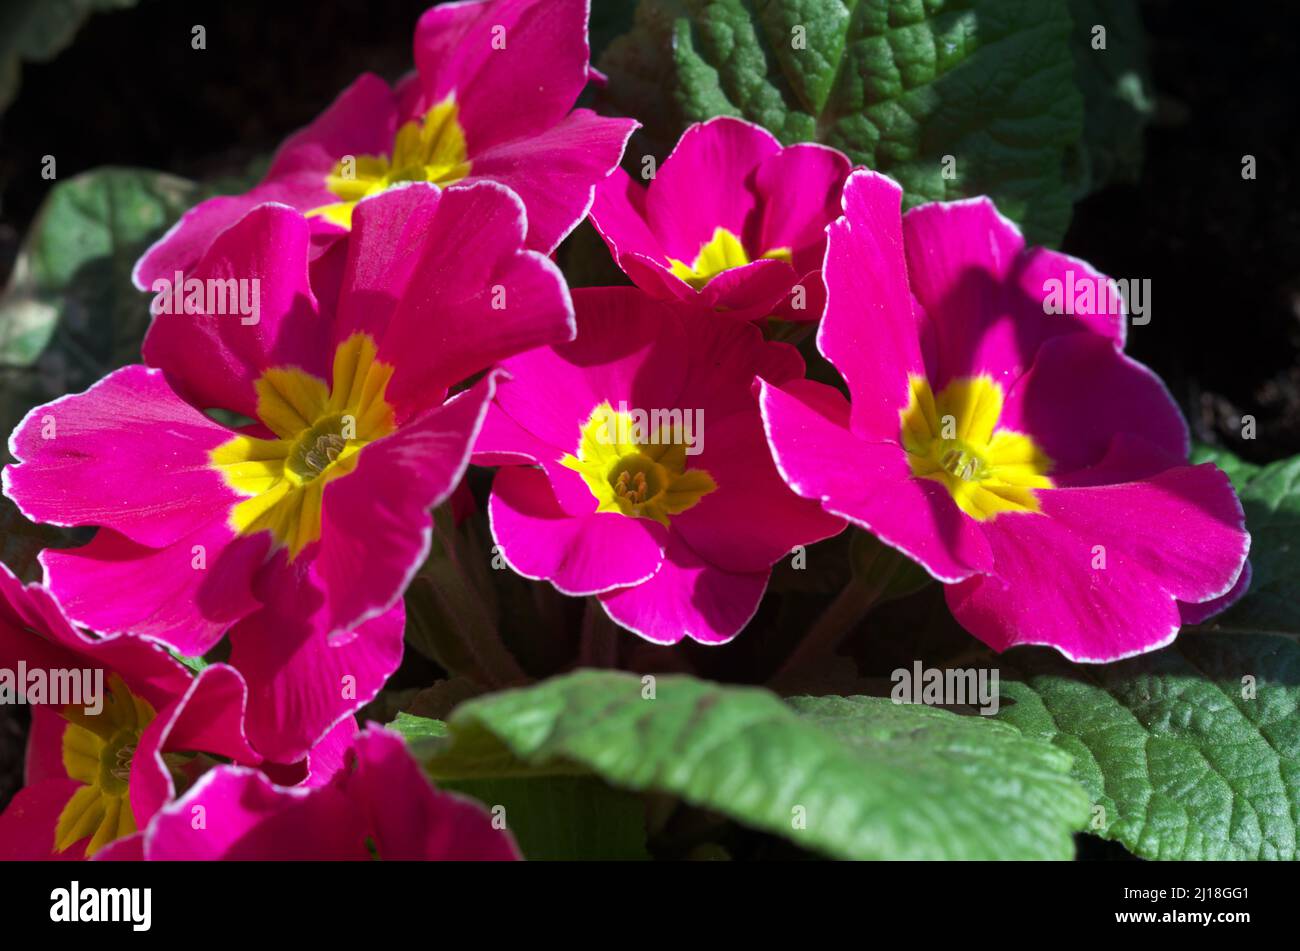 Primroses, lat. Primula, family: Primulaceae Order: Ericales, heathers Stock Photo